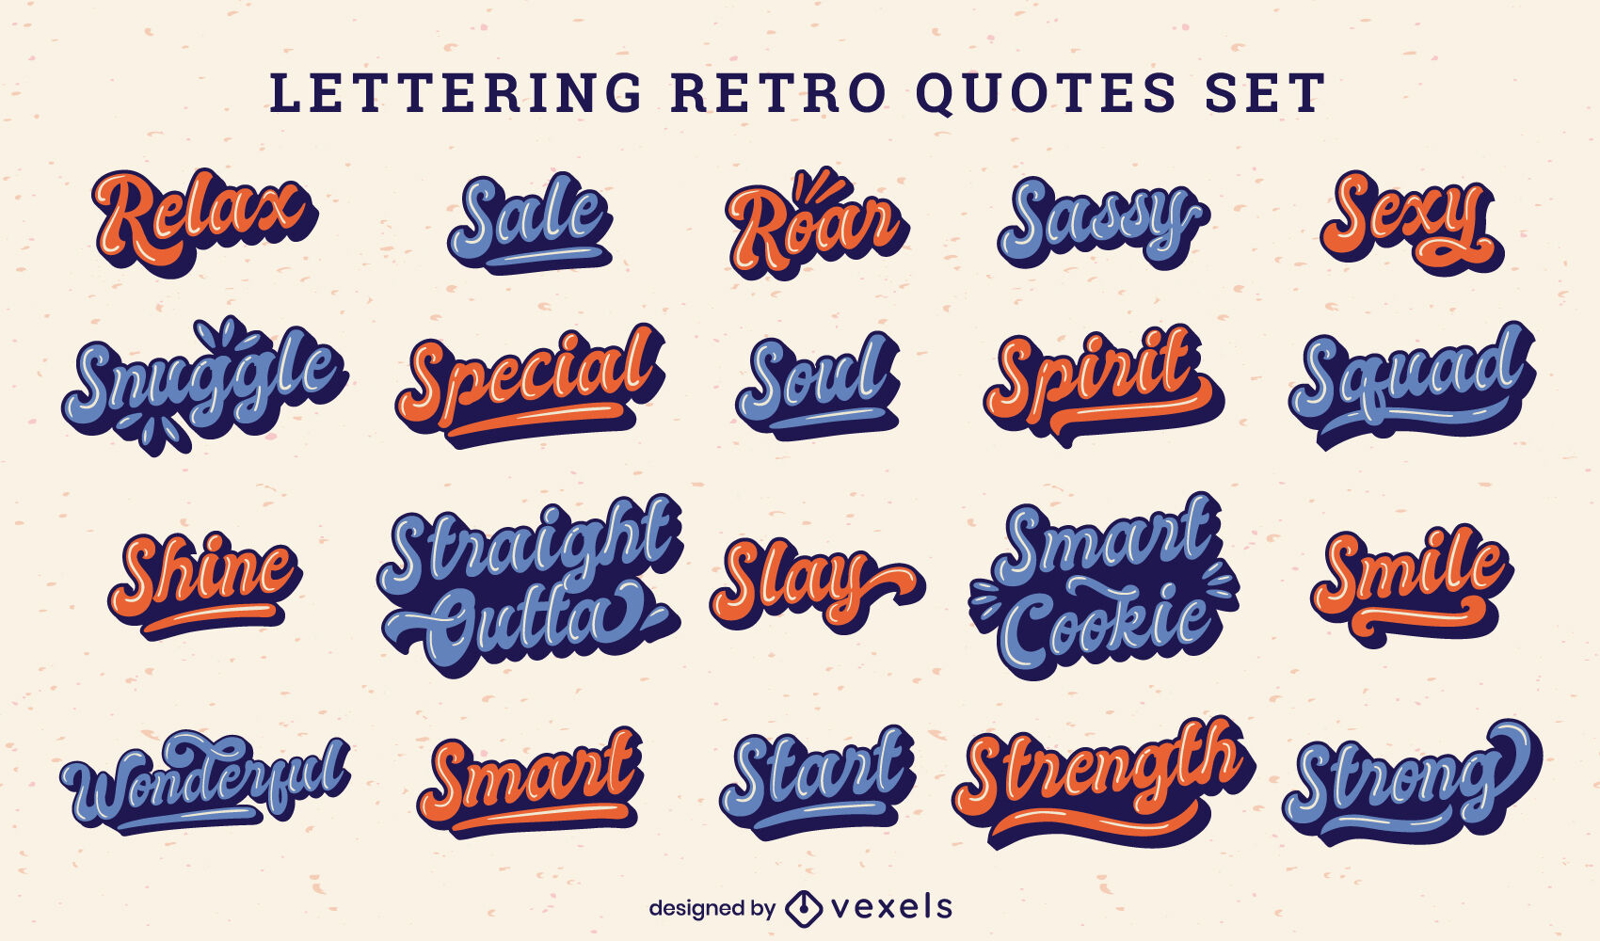 Retro lettering quotes set